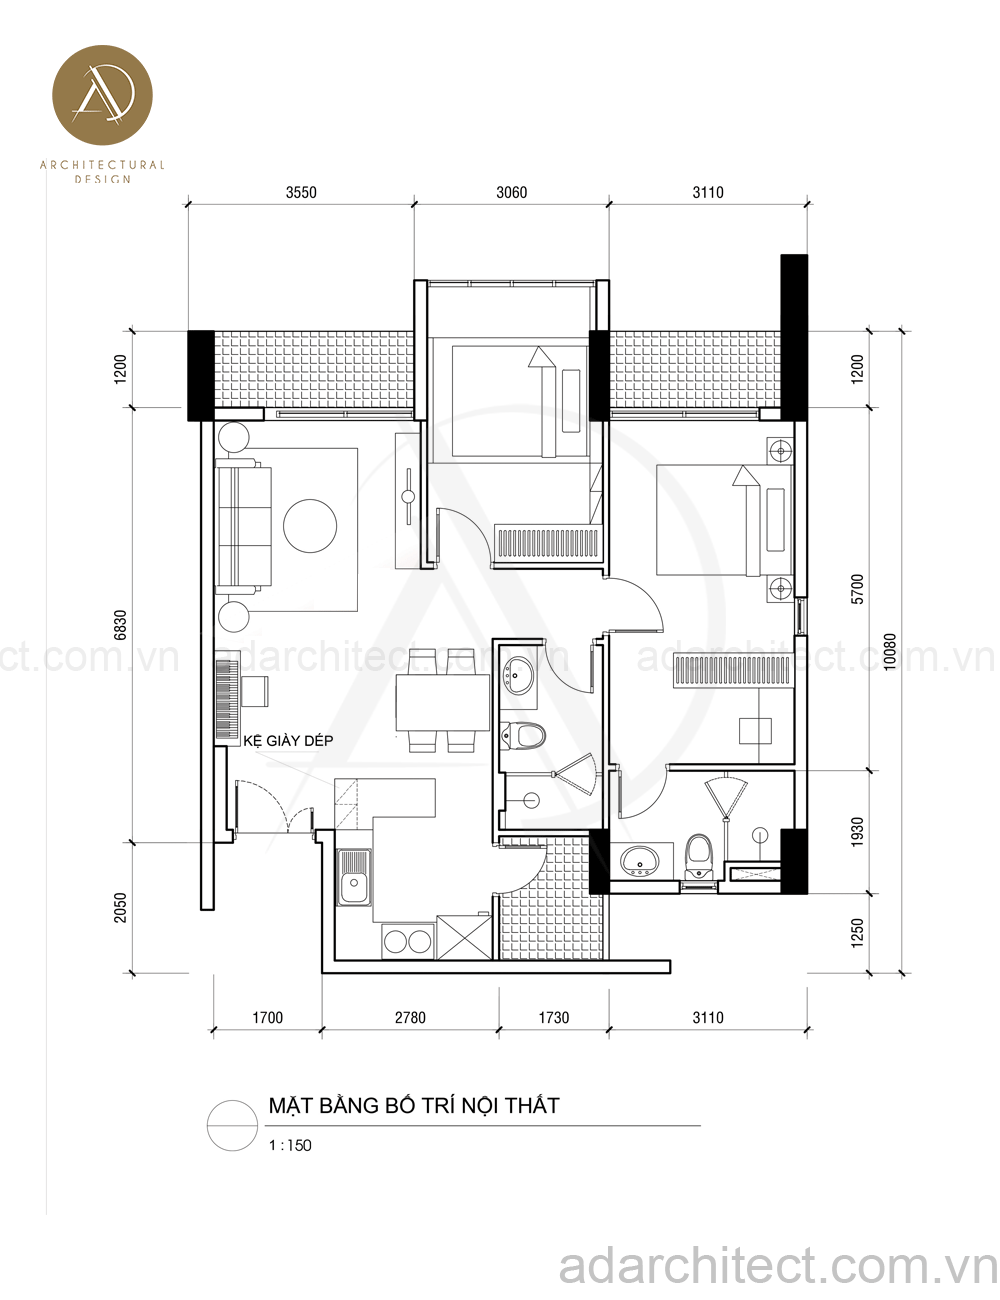 Nếu bạn đang muốn tìm kiếm một mẫu thiết kế nội thất căn hộ 90m2 để tham khảo, hãy xem những hình ảnh này để có thể có một bố cục hoàn hảo cho không gian của bạn.